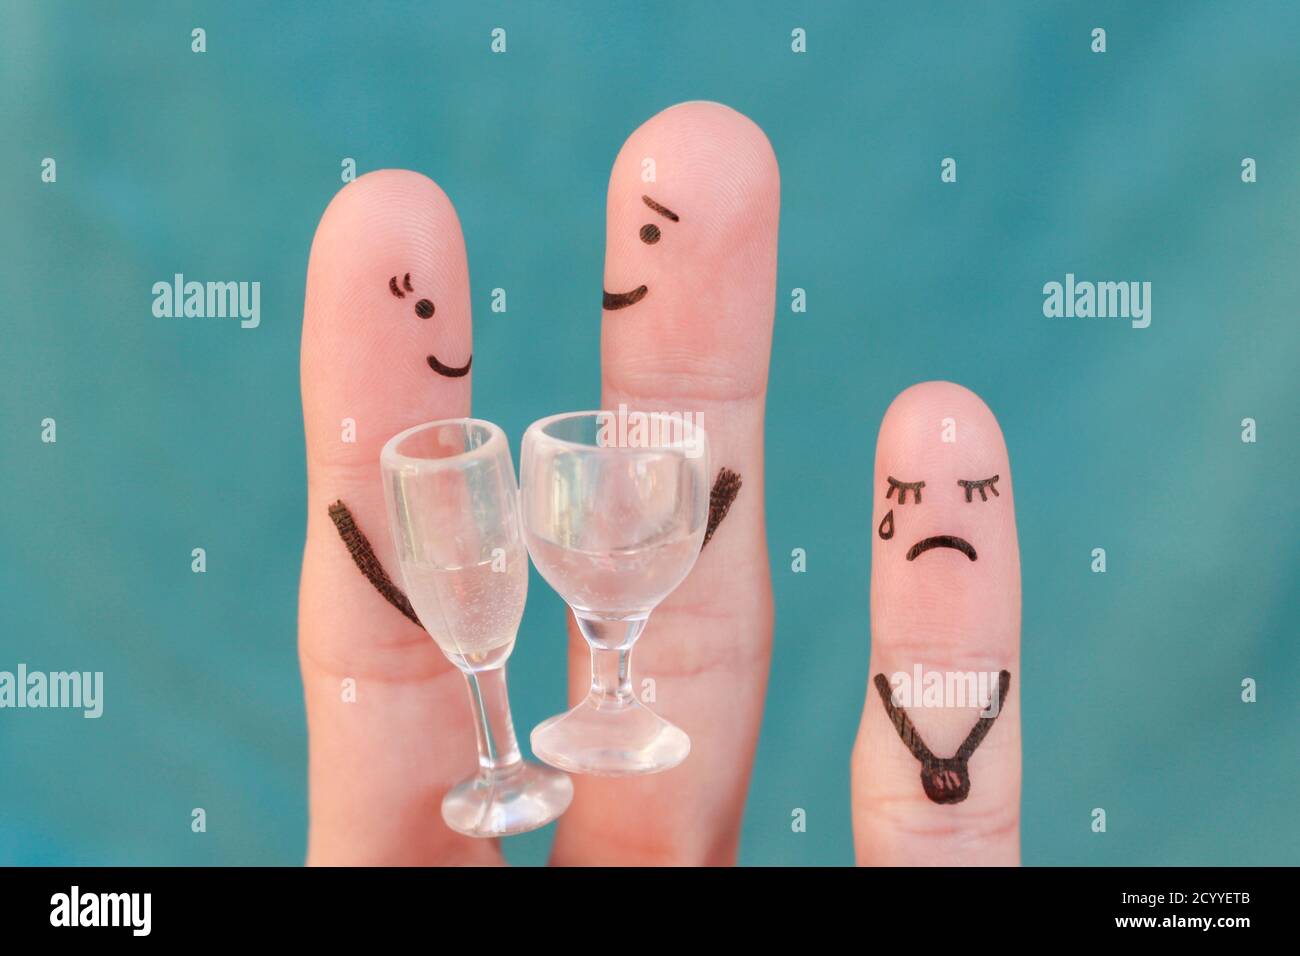 L'art des doigts du couple heureux. L'homme et la femme boivent des boissons alcoolisées. L'enfant est en colère et plein de ressentiment. Banque D'Images